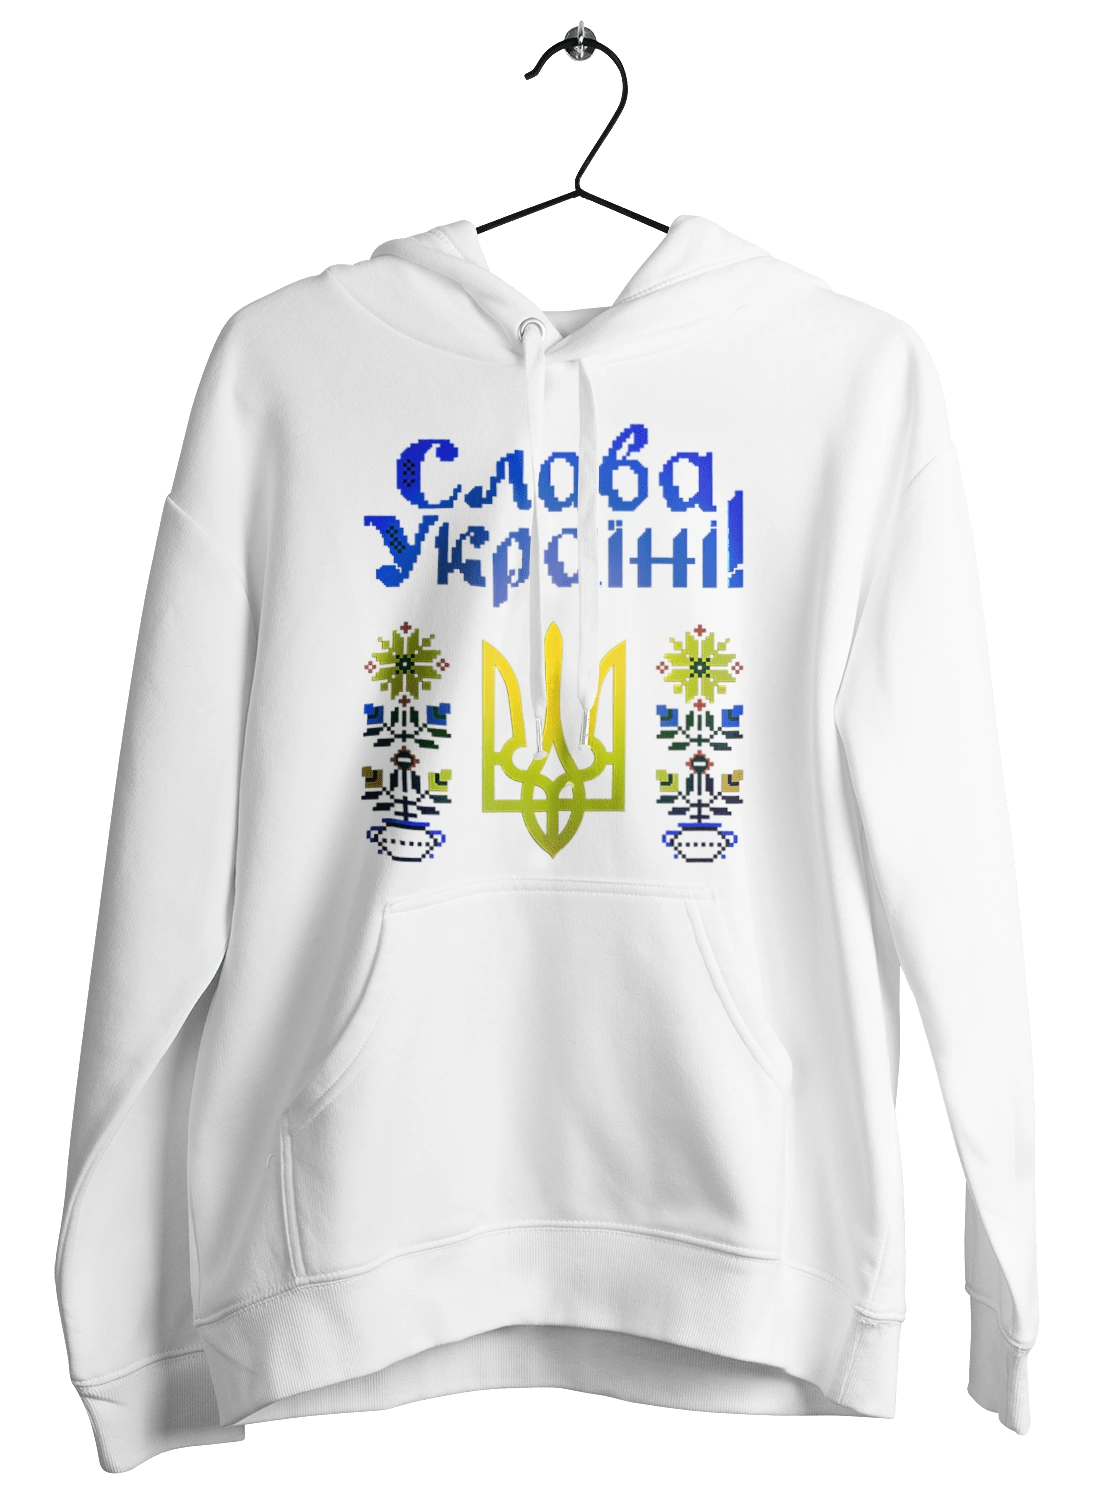 Слава Україні вишивка кольорова